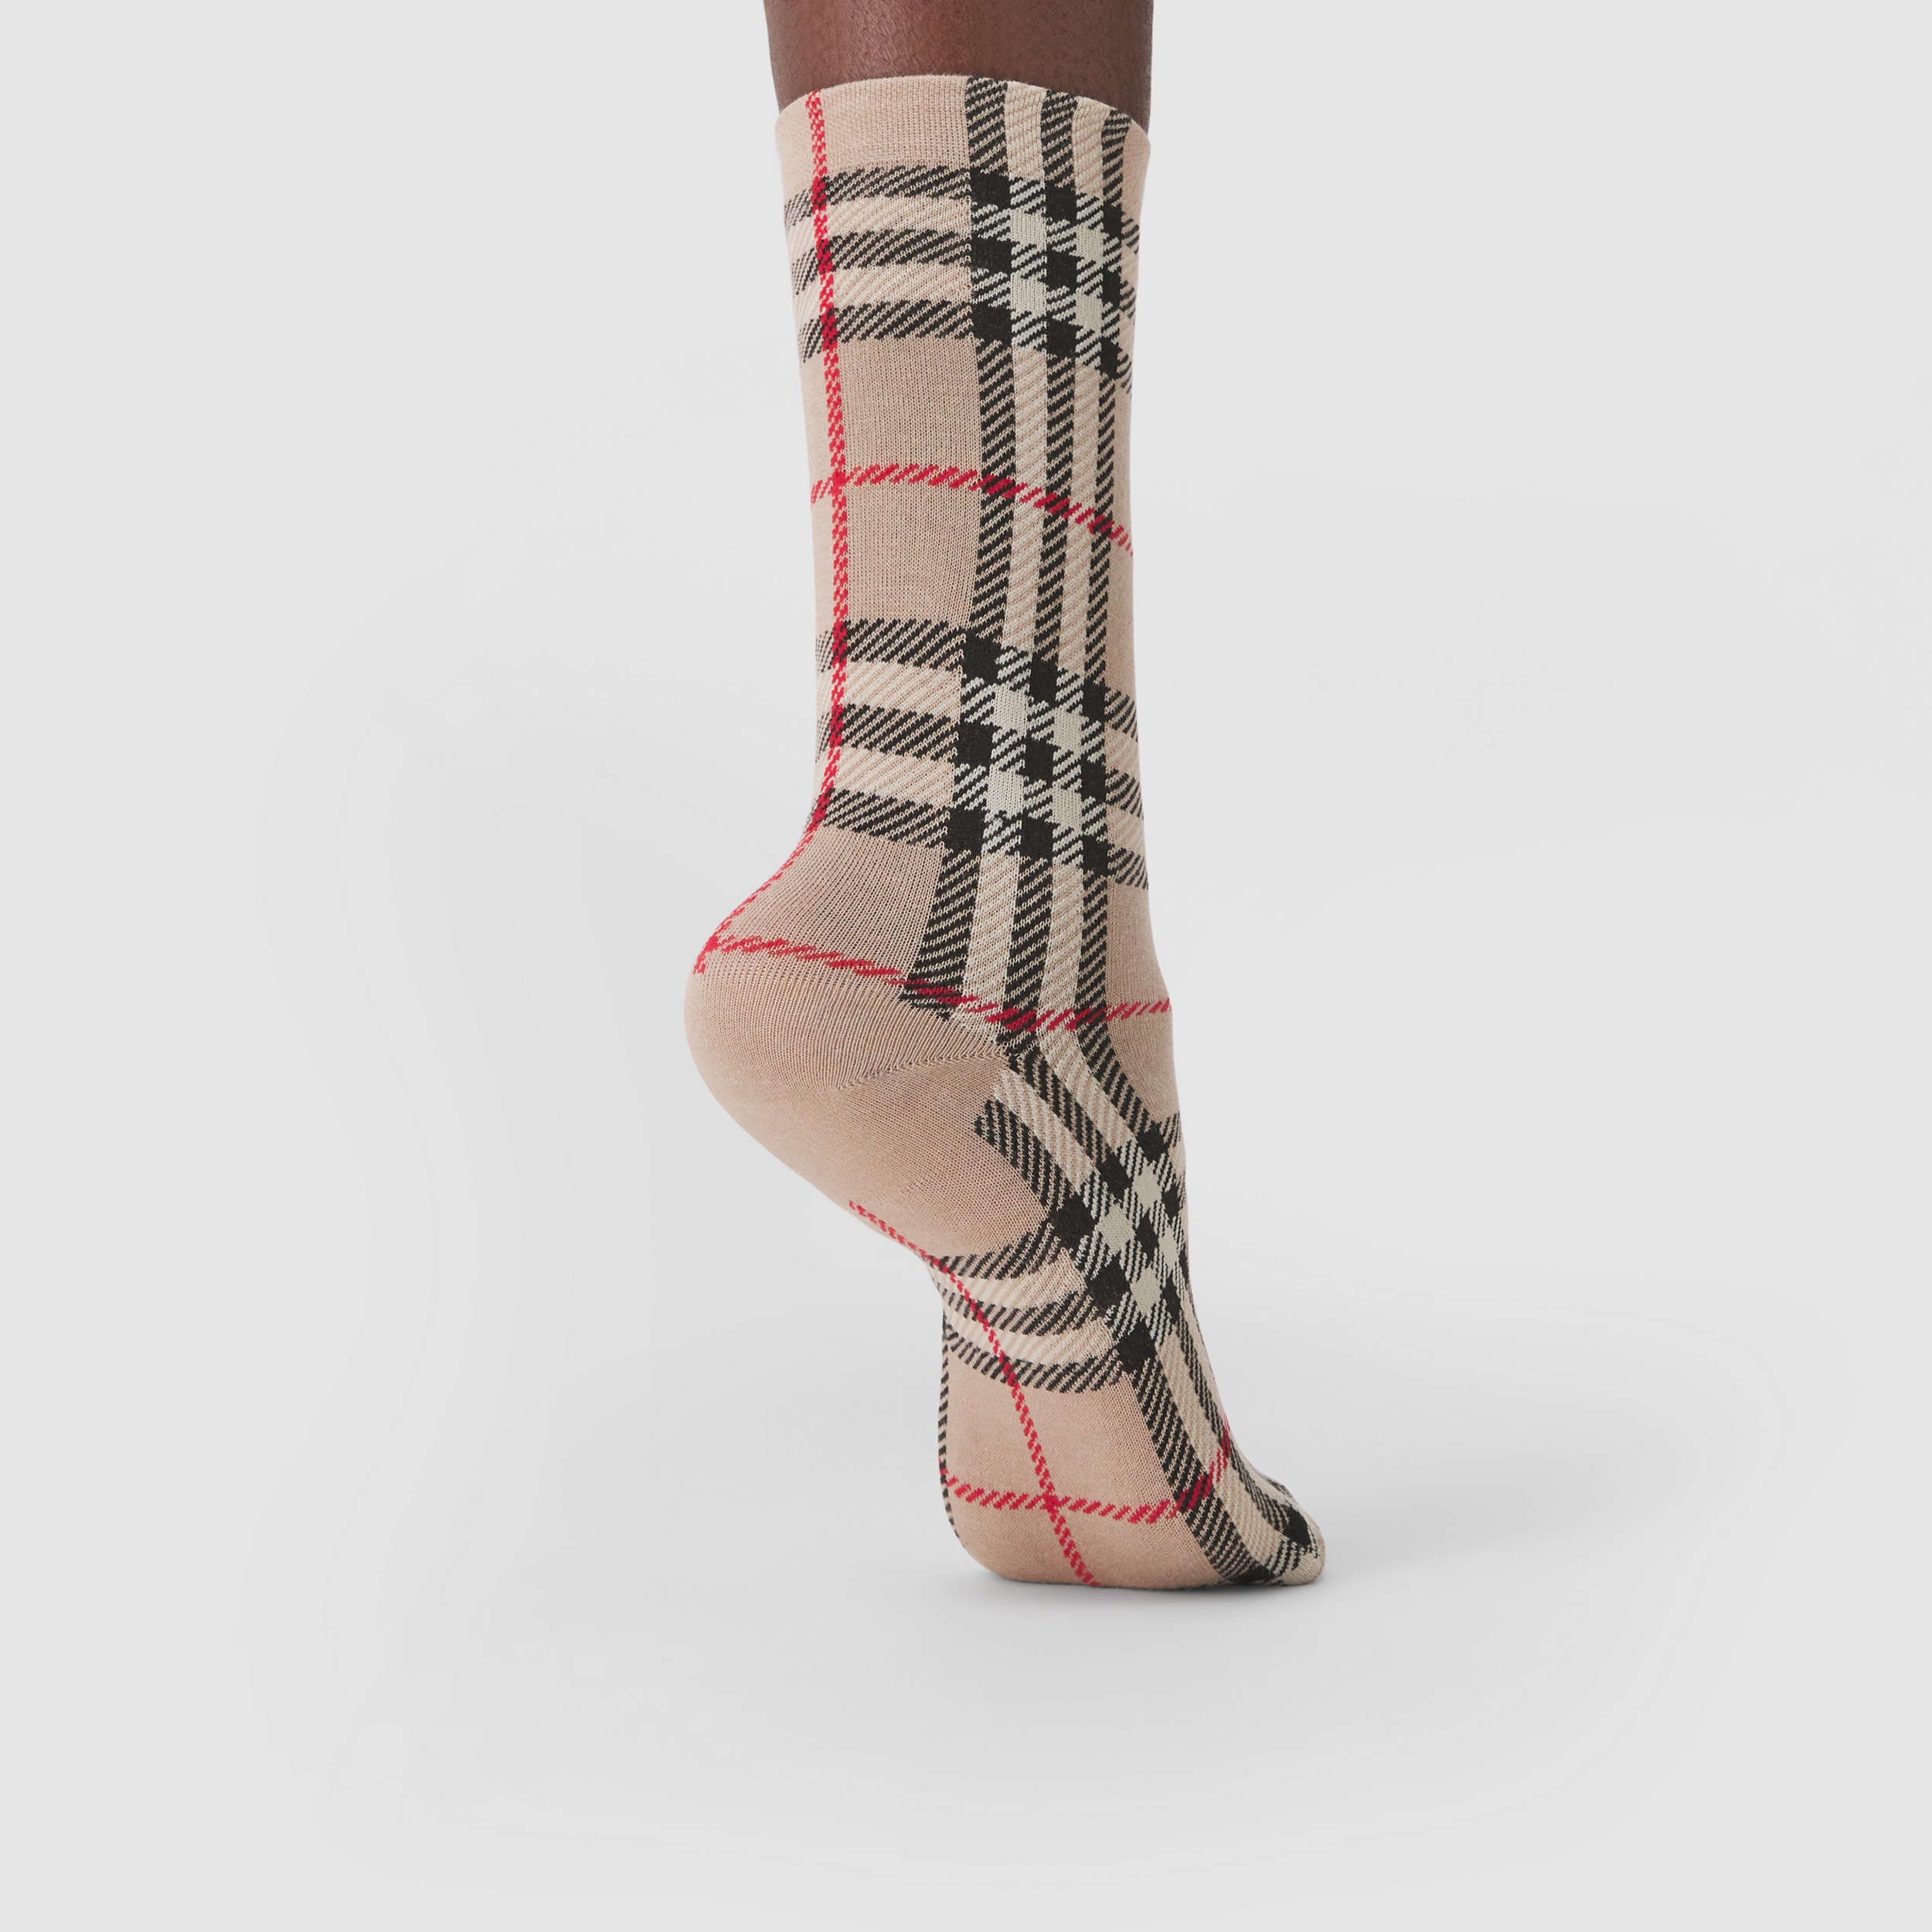 Burberry Baumwolle Socken mit Vintage-Check Damen Bekleidung Strumpfware Socken 